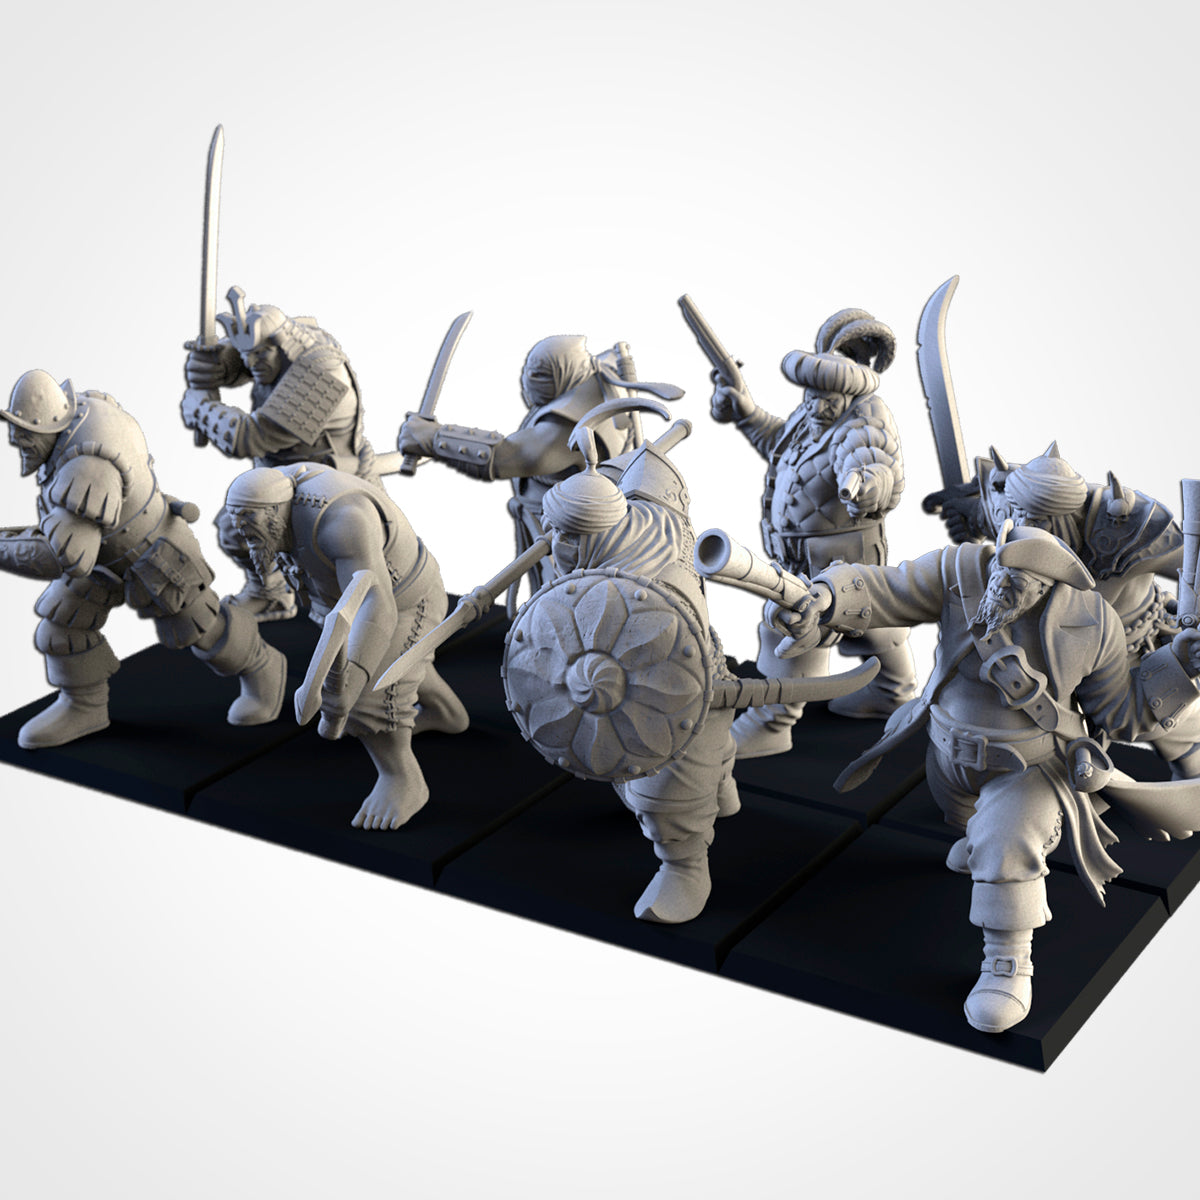 Northern Ogre Mercenaries from Txarli Factory